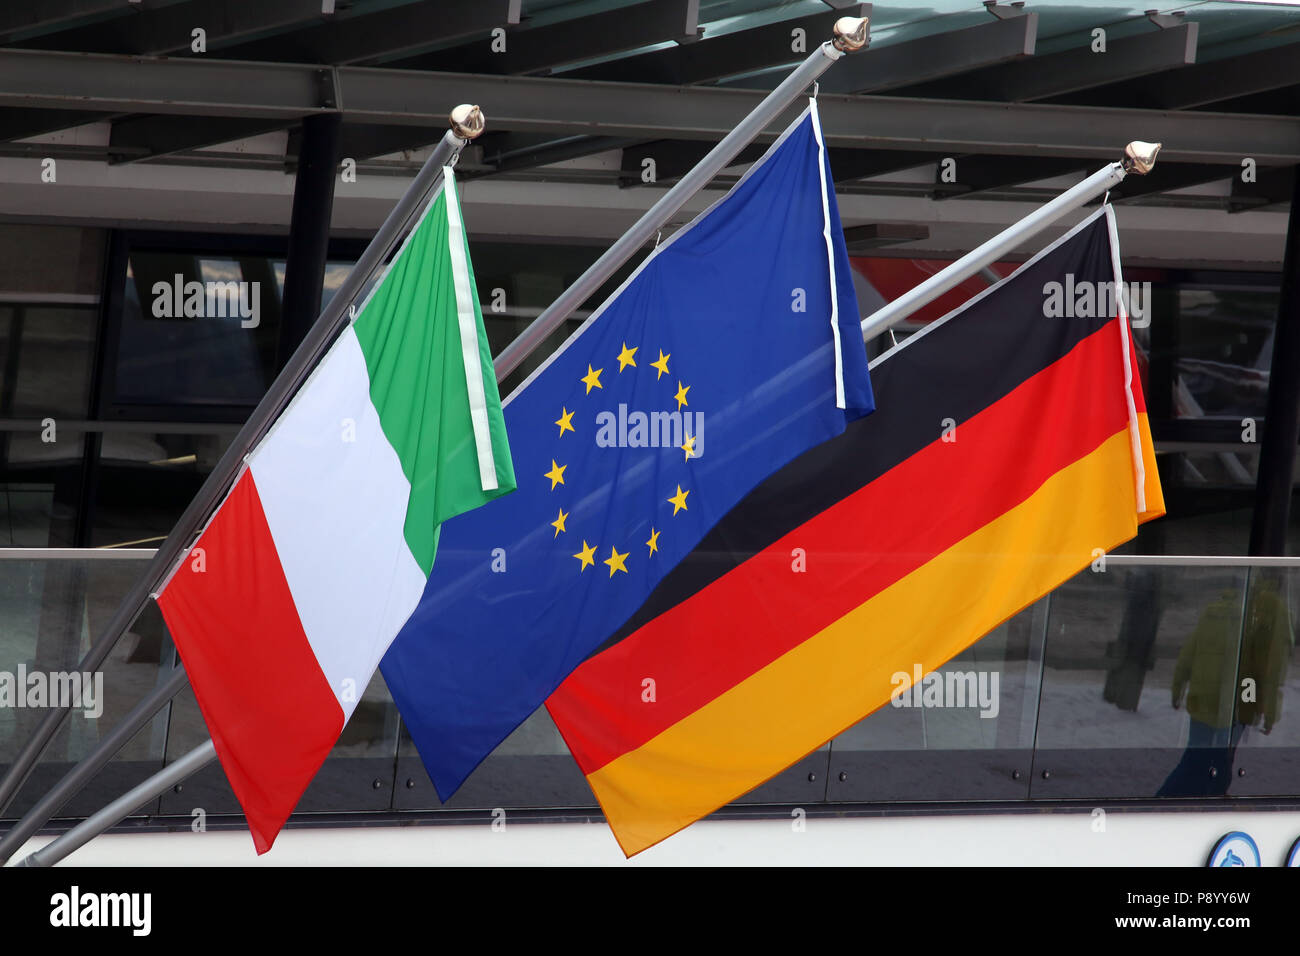 Reischach, Italia, la bandera nacional de Italia, la bandera de la Unión Europea y la bandera nacional de la República Federal de Alemania Foto de stock